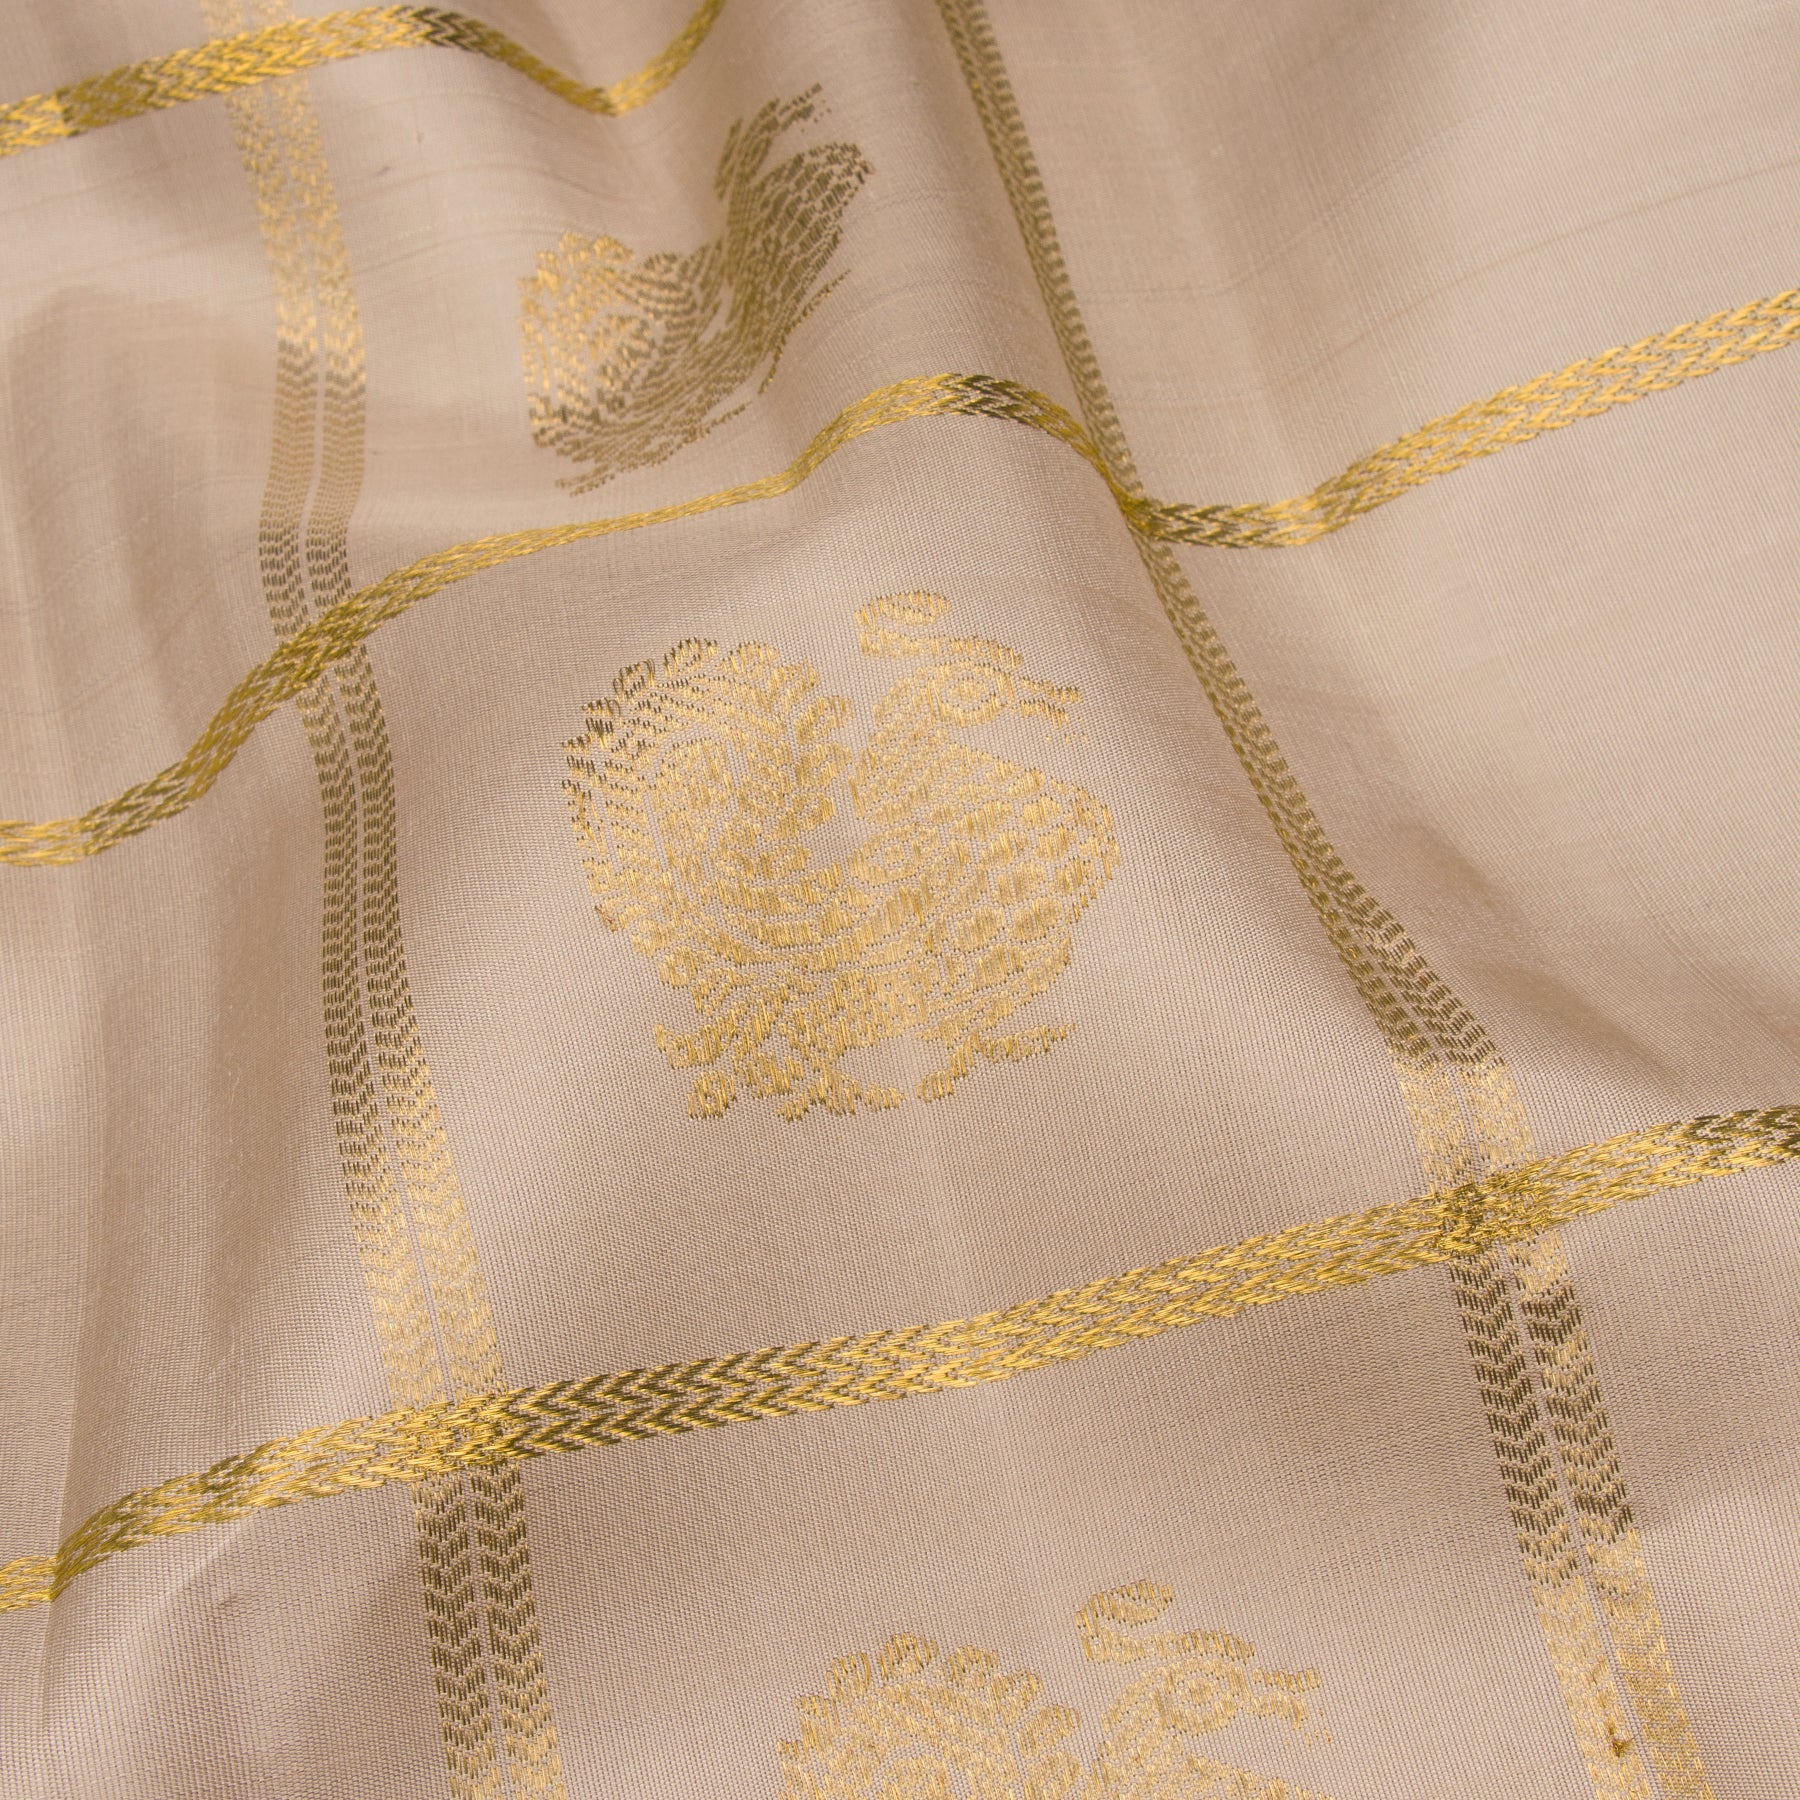 Kanakavalli Kanjivaram Silk Sari 23-041-HS001-09252 - Fabric View